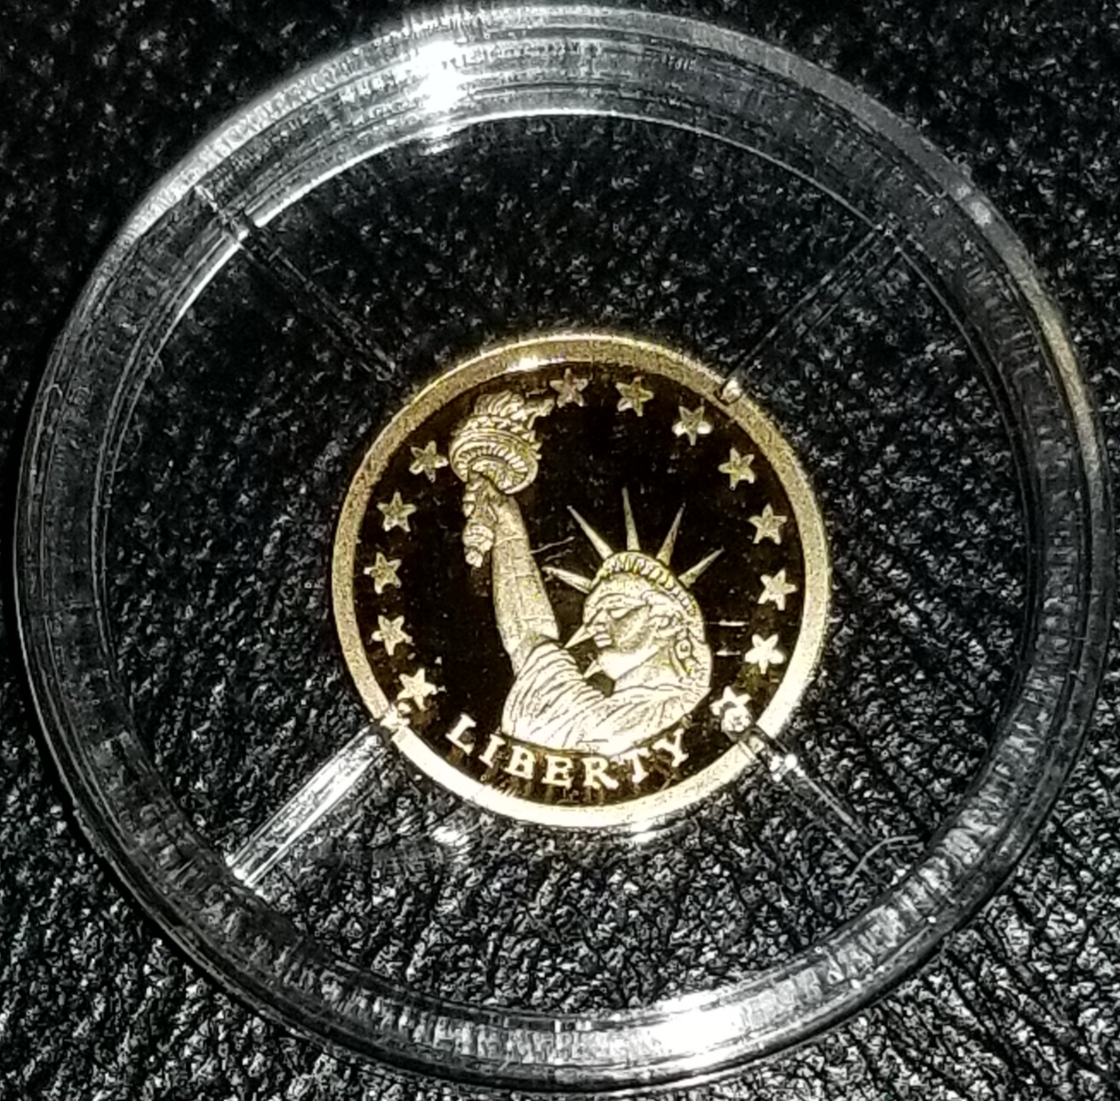 Drexel Hill Rare Coin